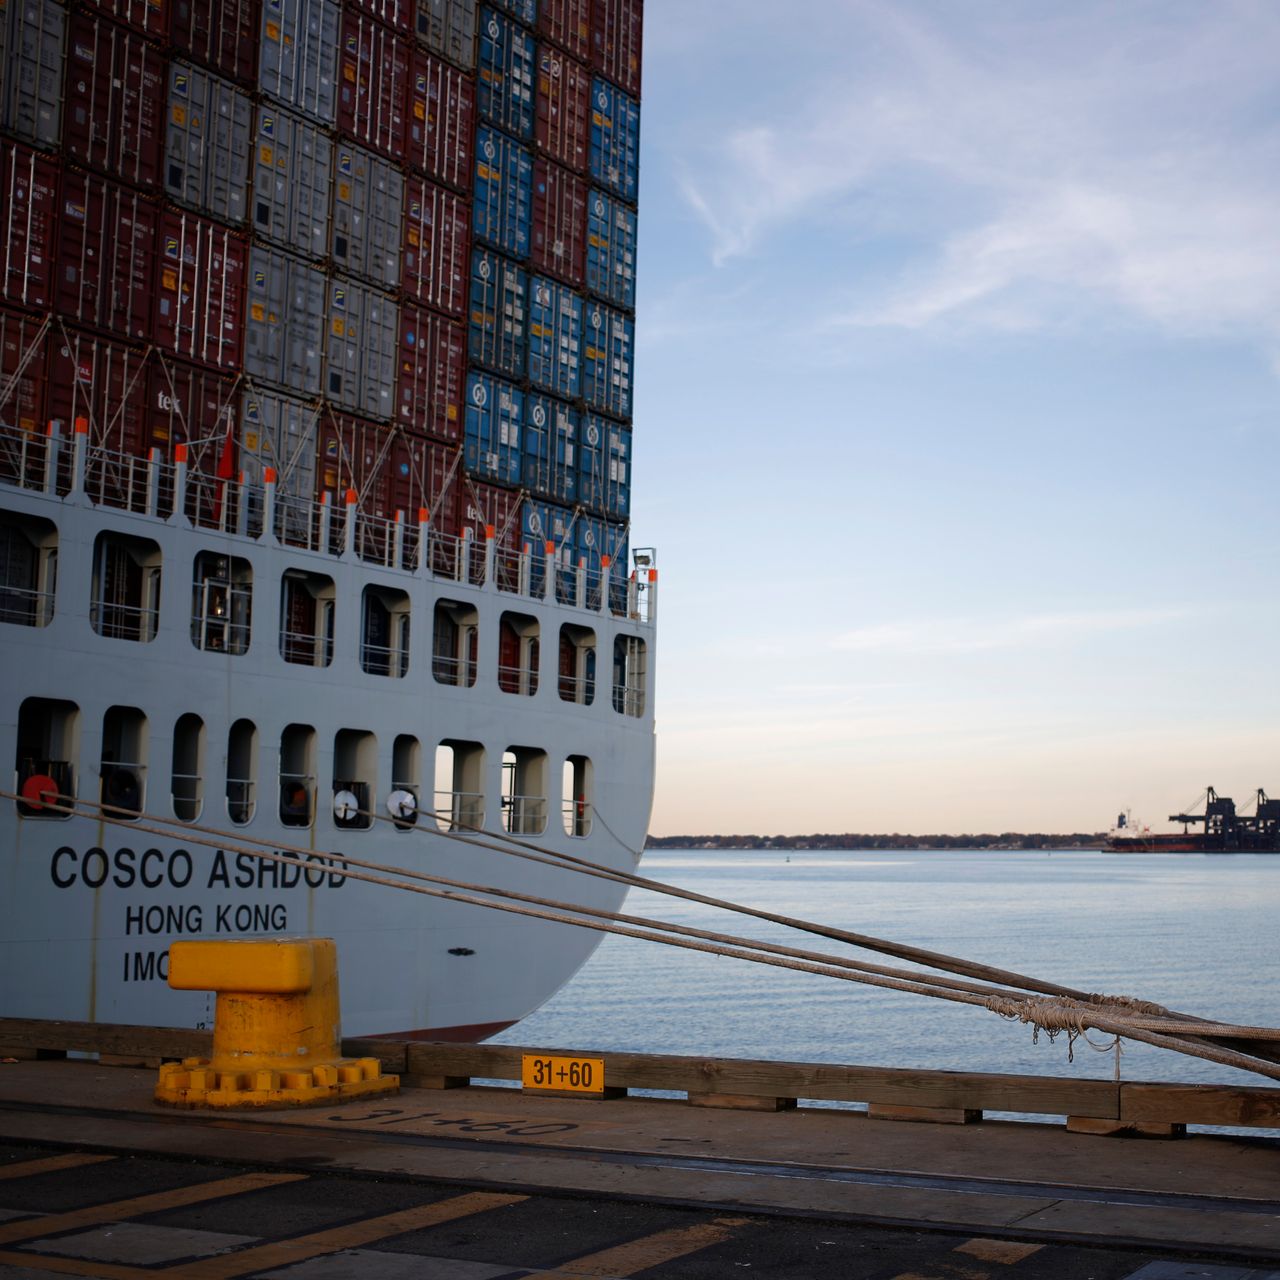 鹿特丹成为第一个集装箱吞吐量超过1500万标准箱的欧洲海港